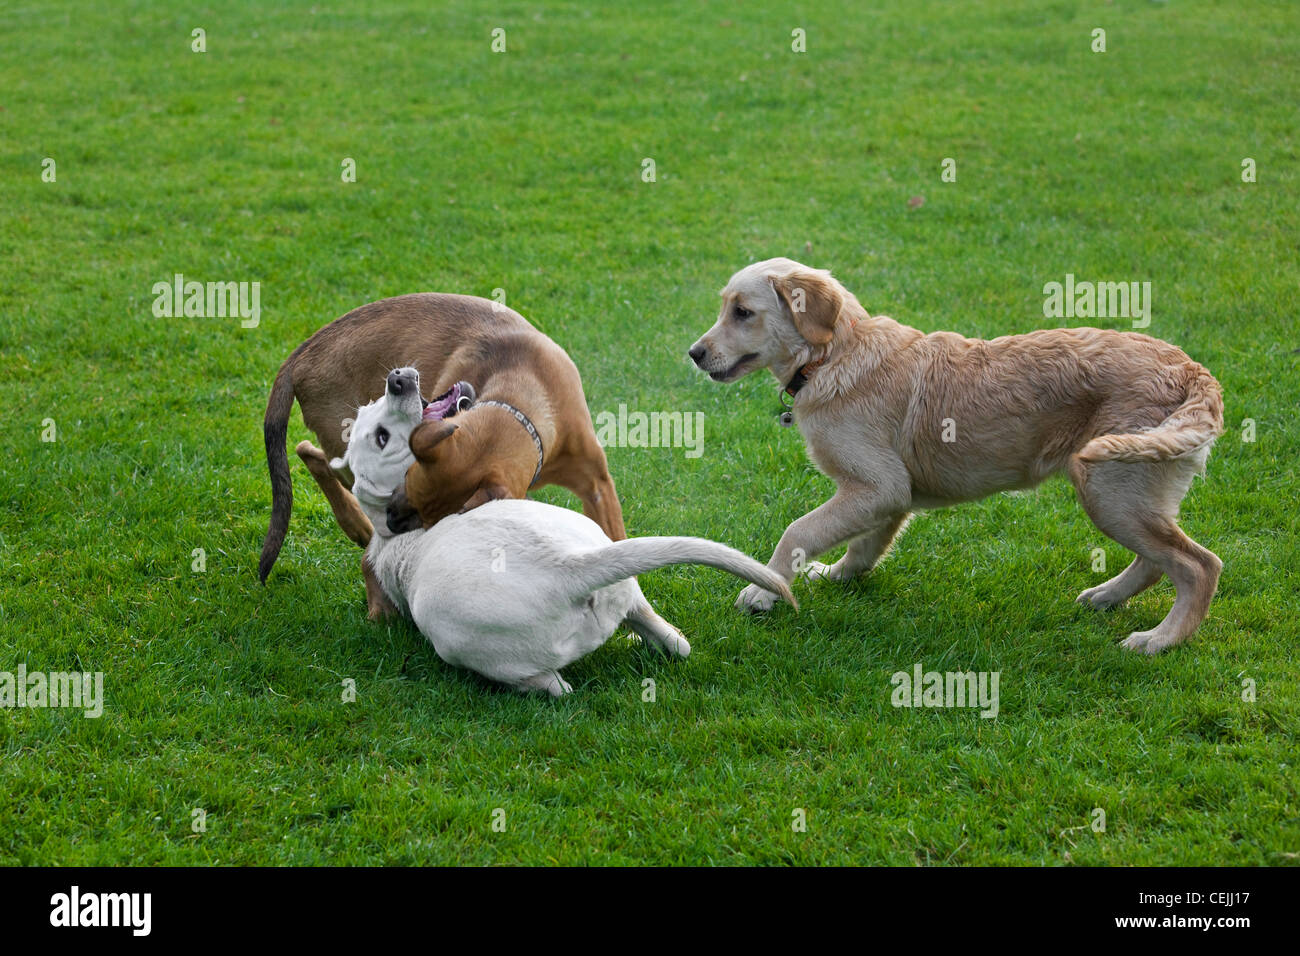 Les jeunes chiens (Canis lupus familiaris) s'amuser en jouant, pourchasser et de mordre l'un l'autre dans le jardin Banque D'Images